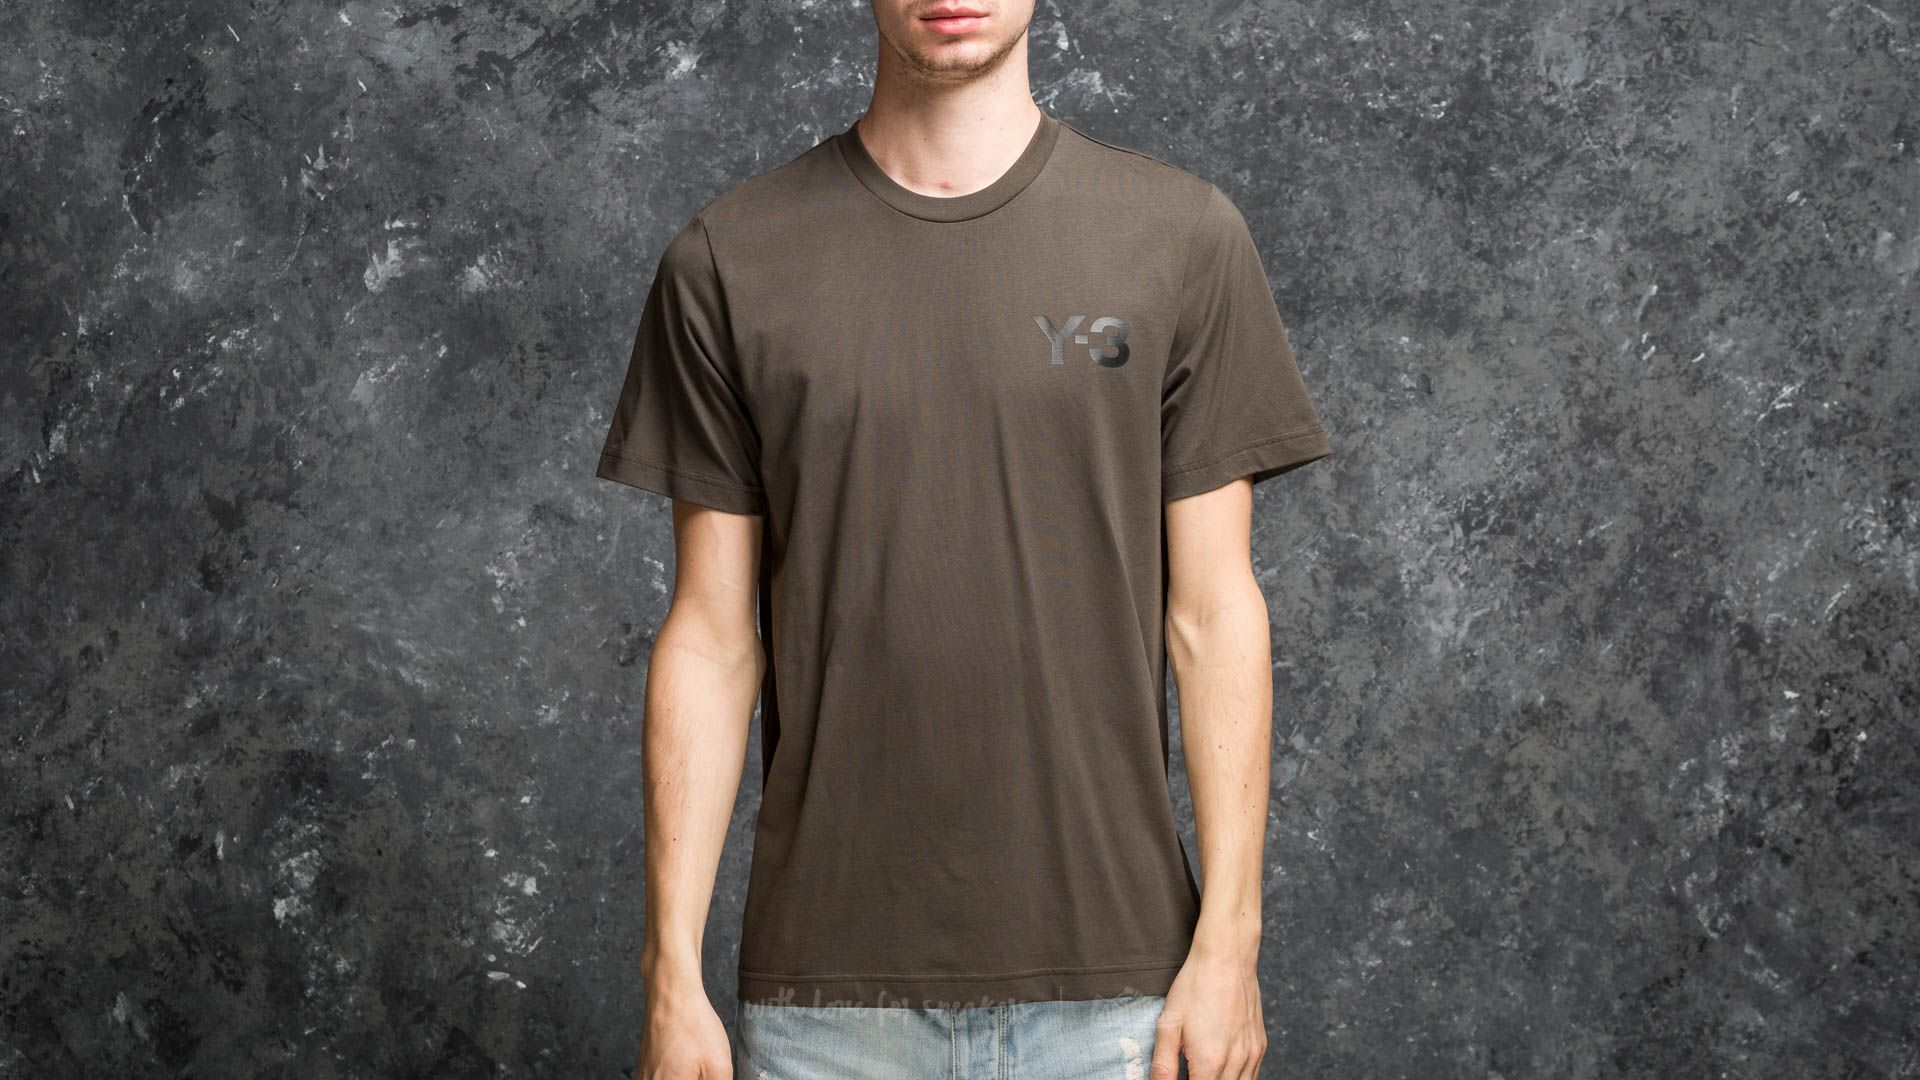 Camisetas Y-3 M Classic Logo Front Tee Dark Olive